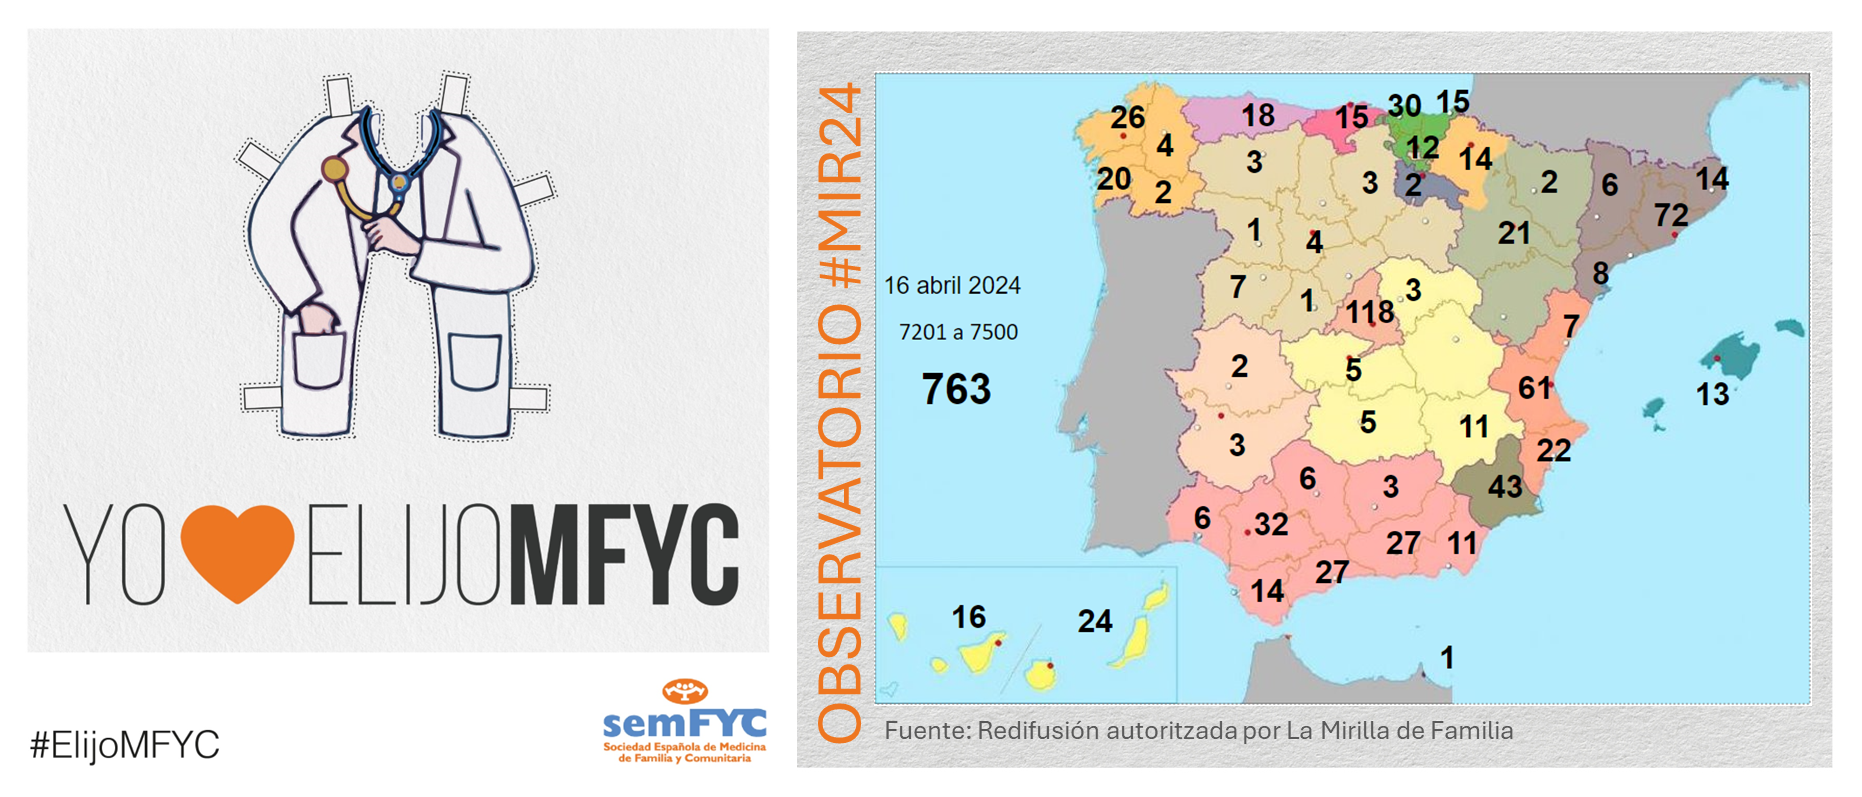 OBSERVATORIO ELIJOMFYC: Sumamos 119 residentes de MFYC en el primer “round” de hoy